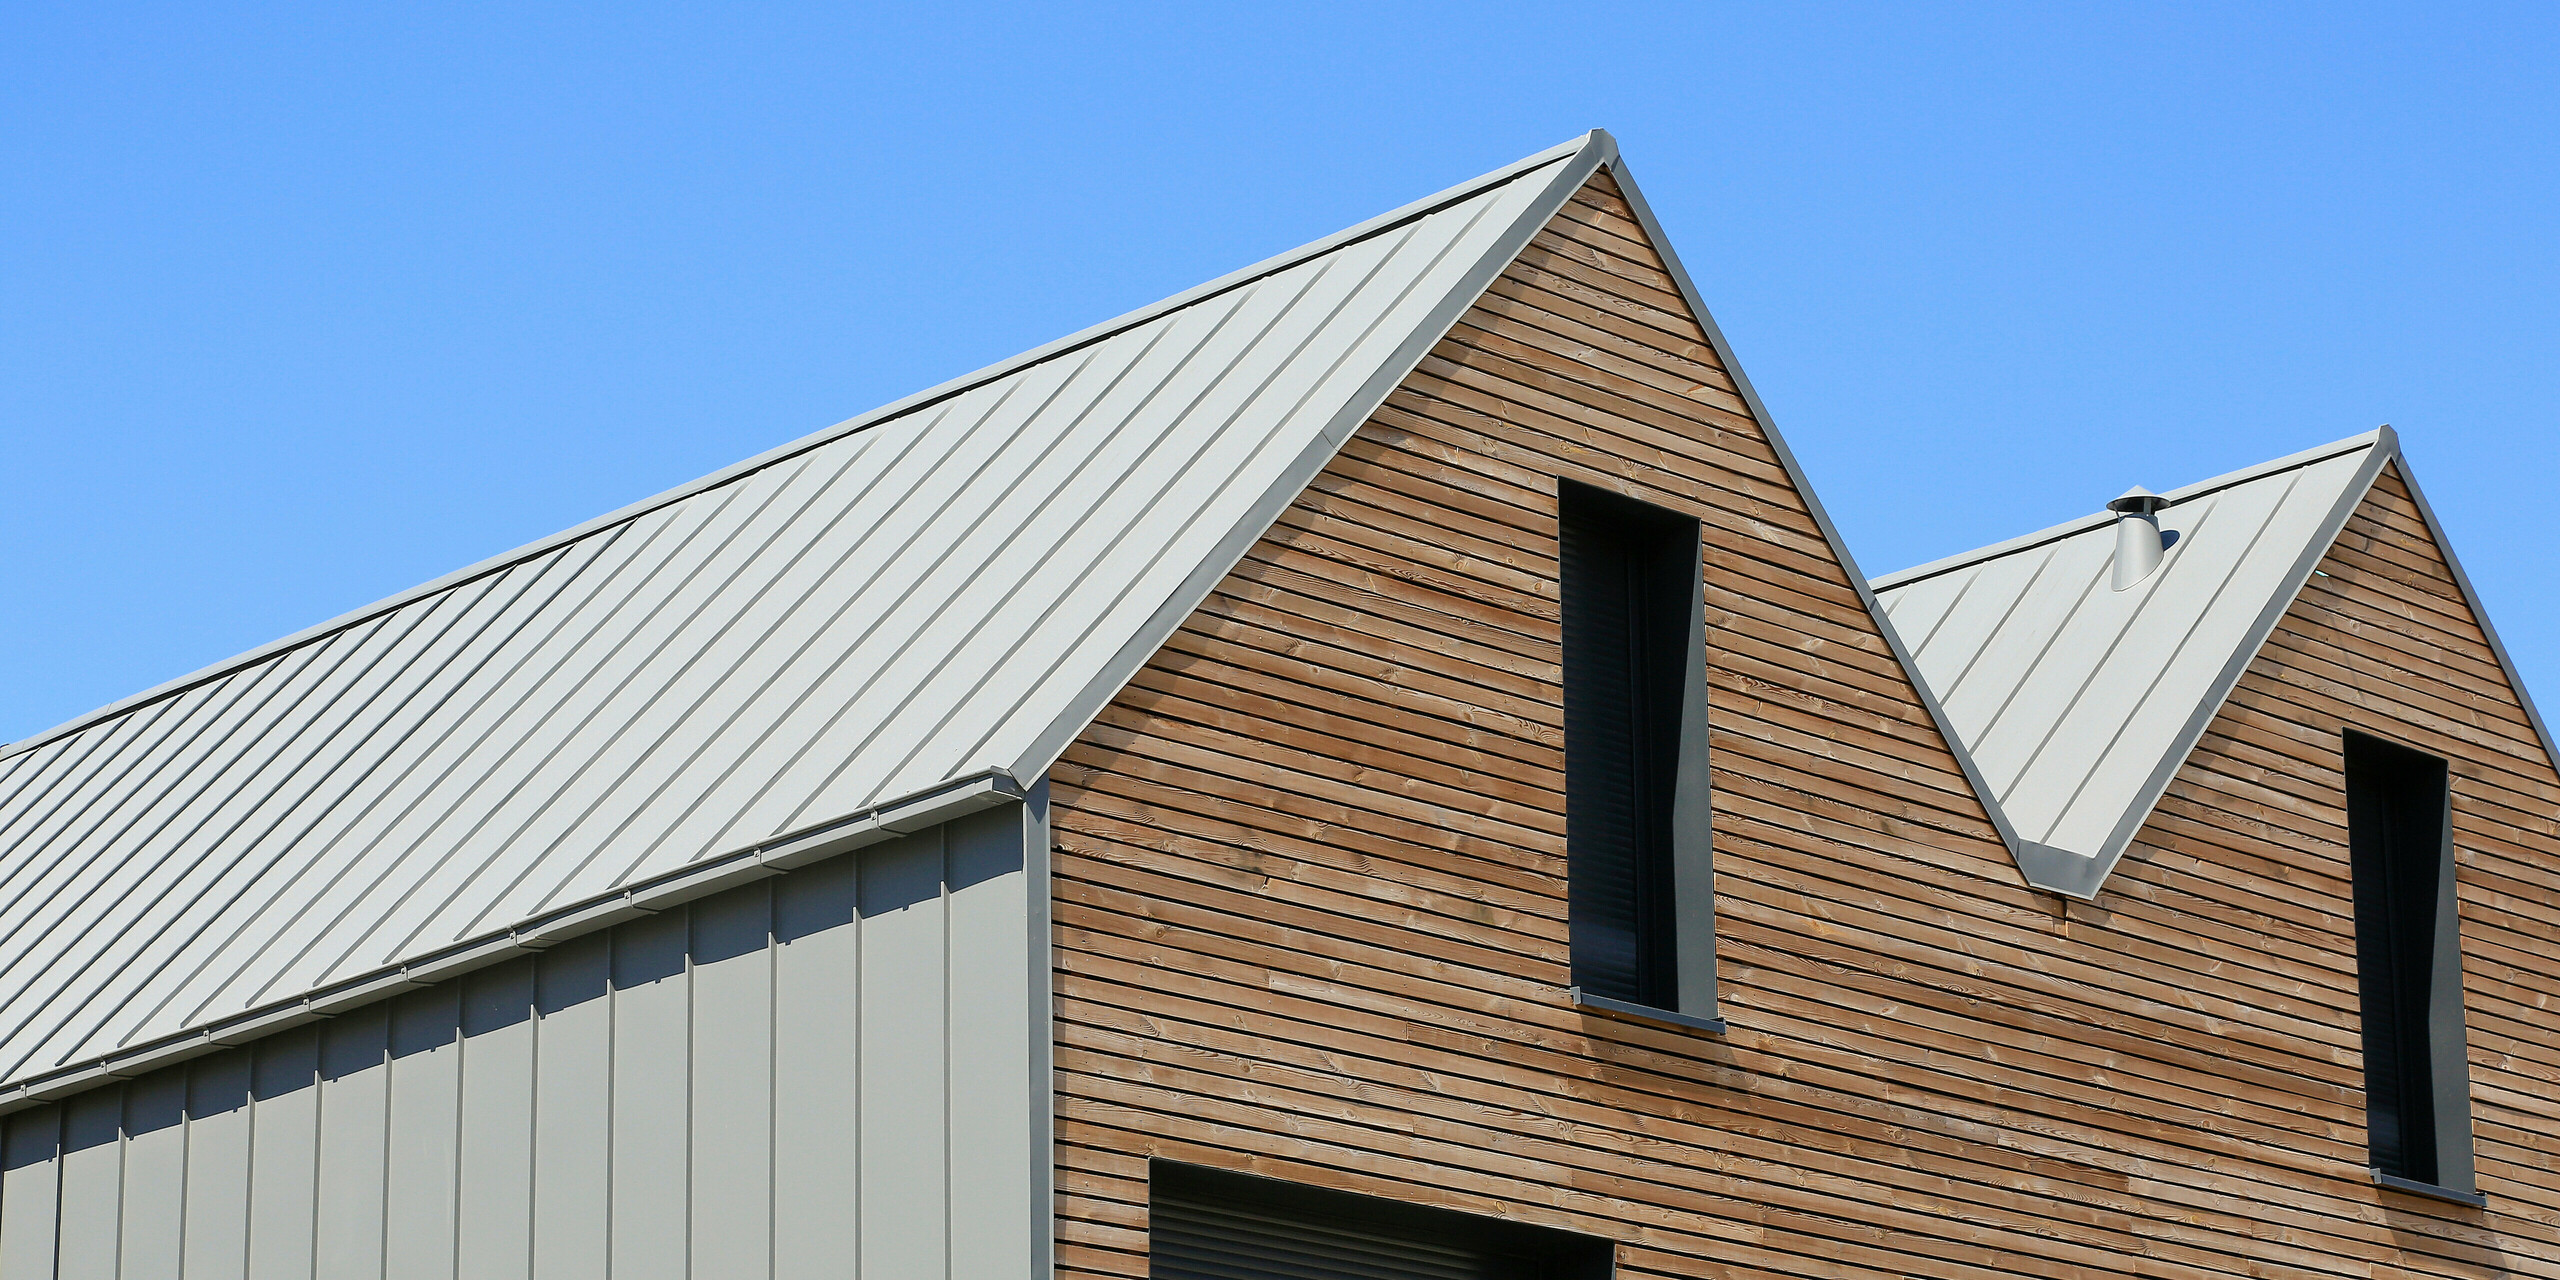 Le joint debout PREFALZ en gris souris s'étend sur les façades et les toits à pignon d'un lotissement mitoyen à Mundolsheim. Les coques uniformes du bâtiment en aluminium créent une image globale harmonieuse.